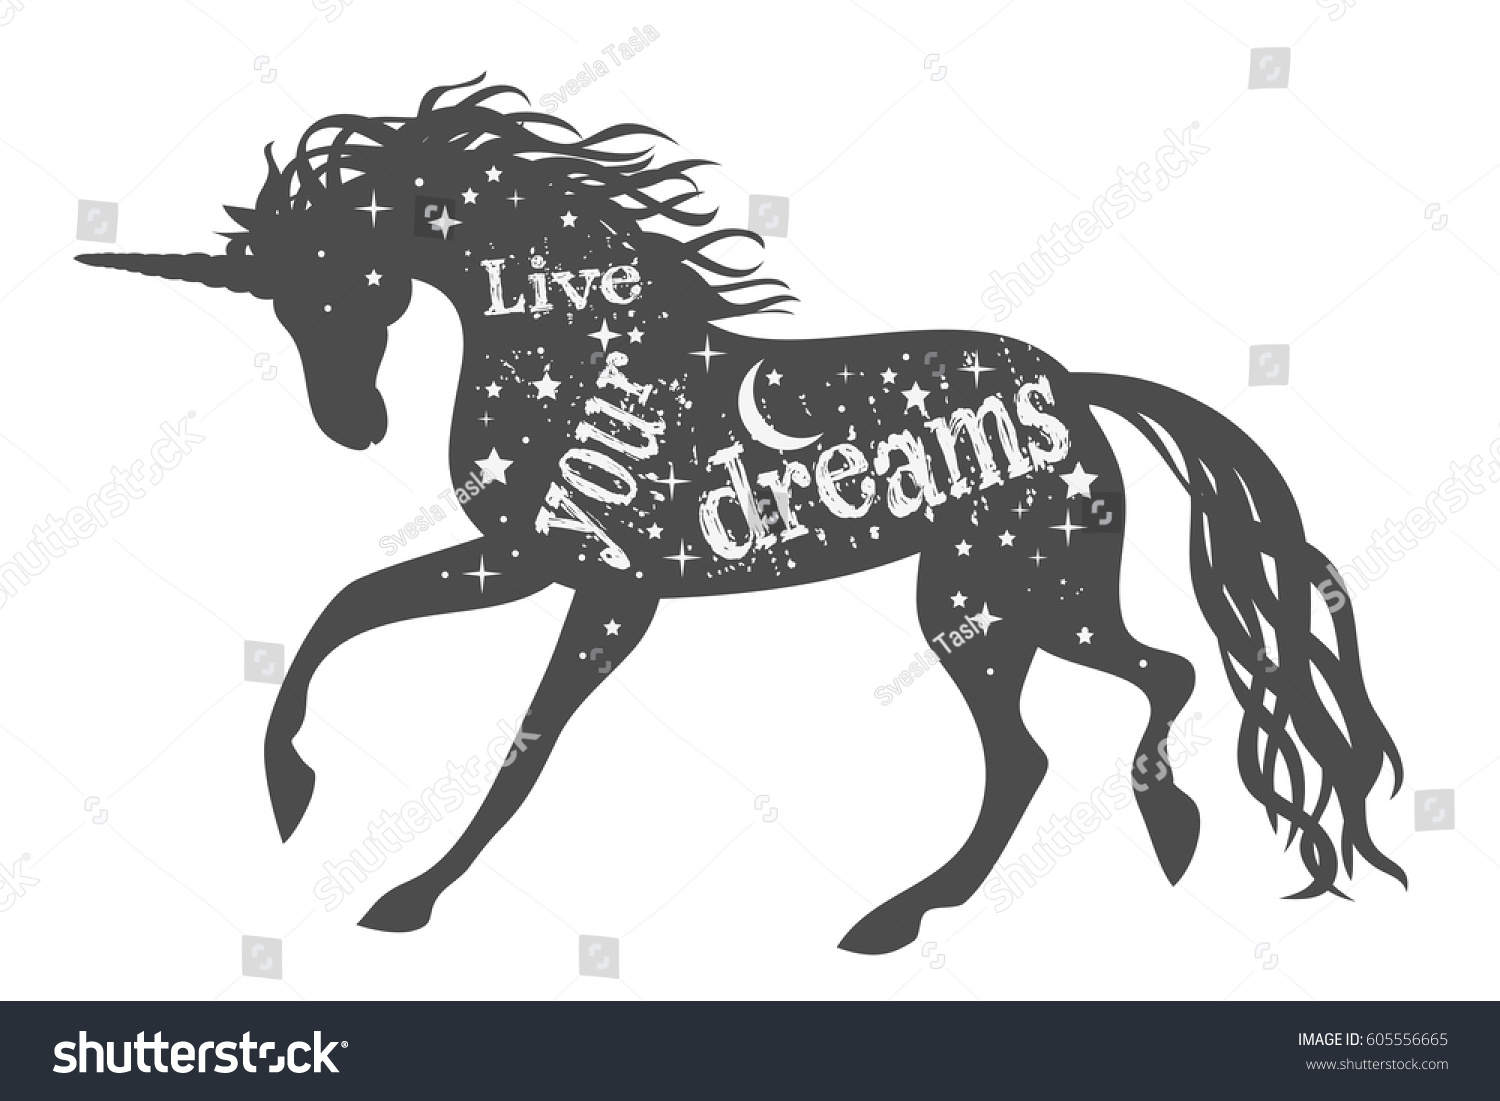 Download Live Your Dreams Magic Unicorn Silhouette Stock Vector ...